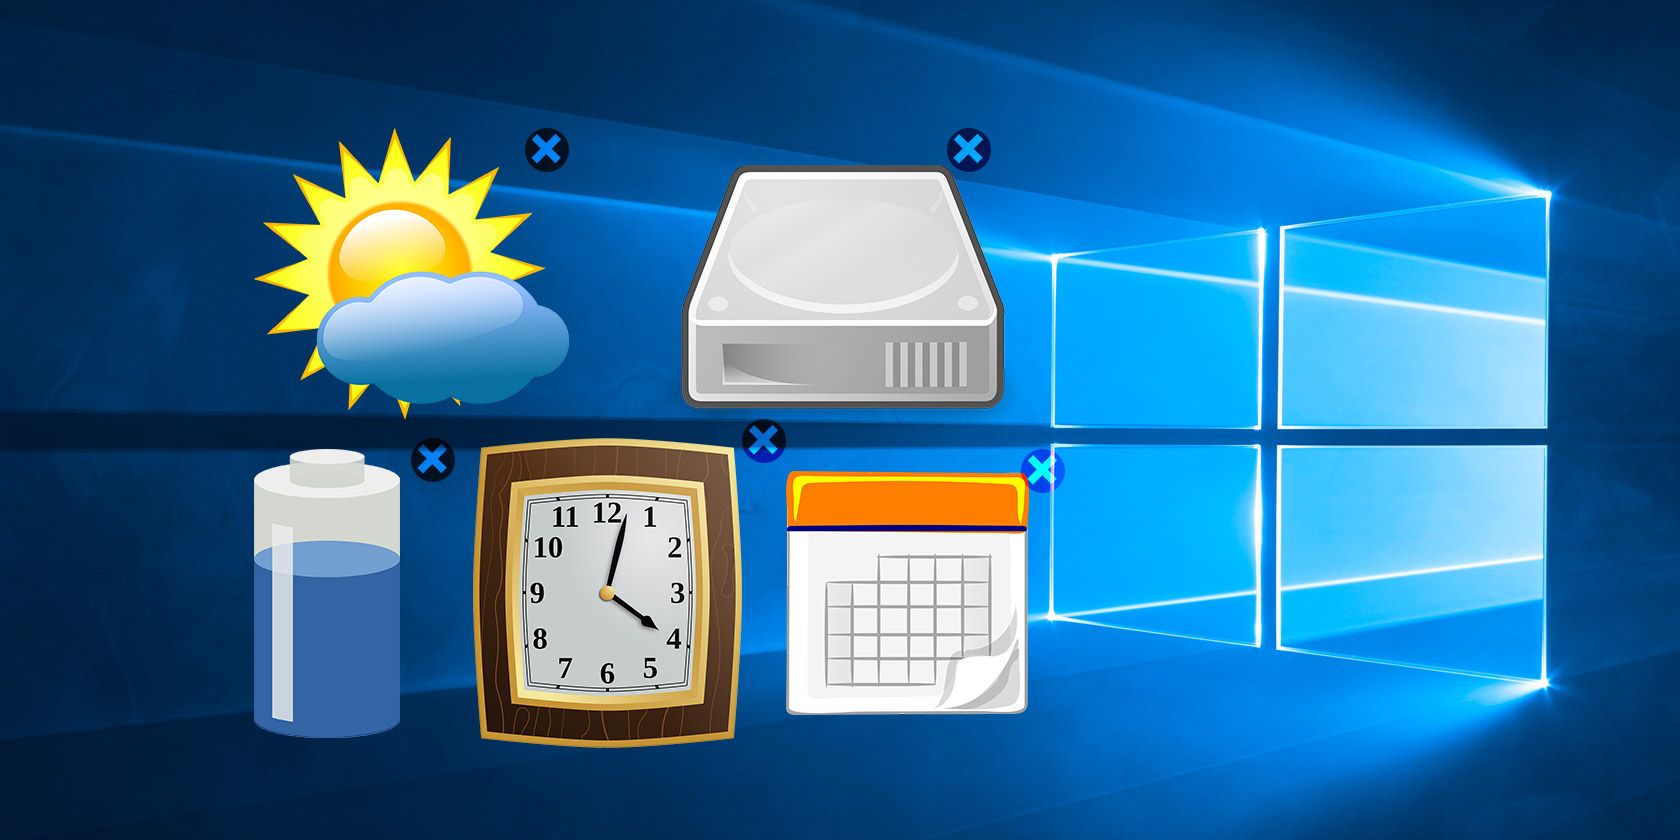 Comment obtenir des widgets Windows 10 sur votre bureau